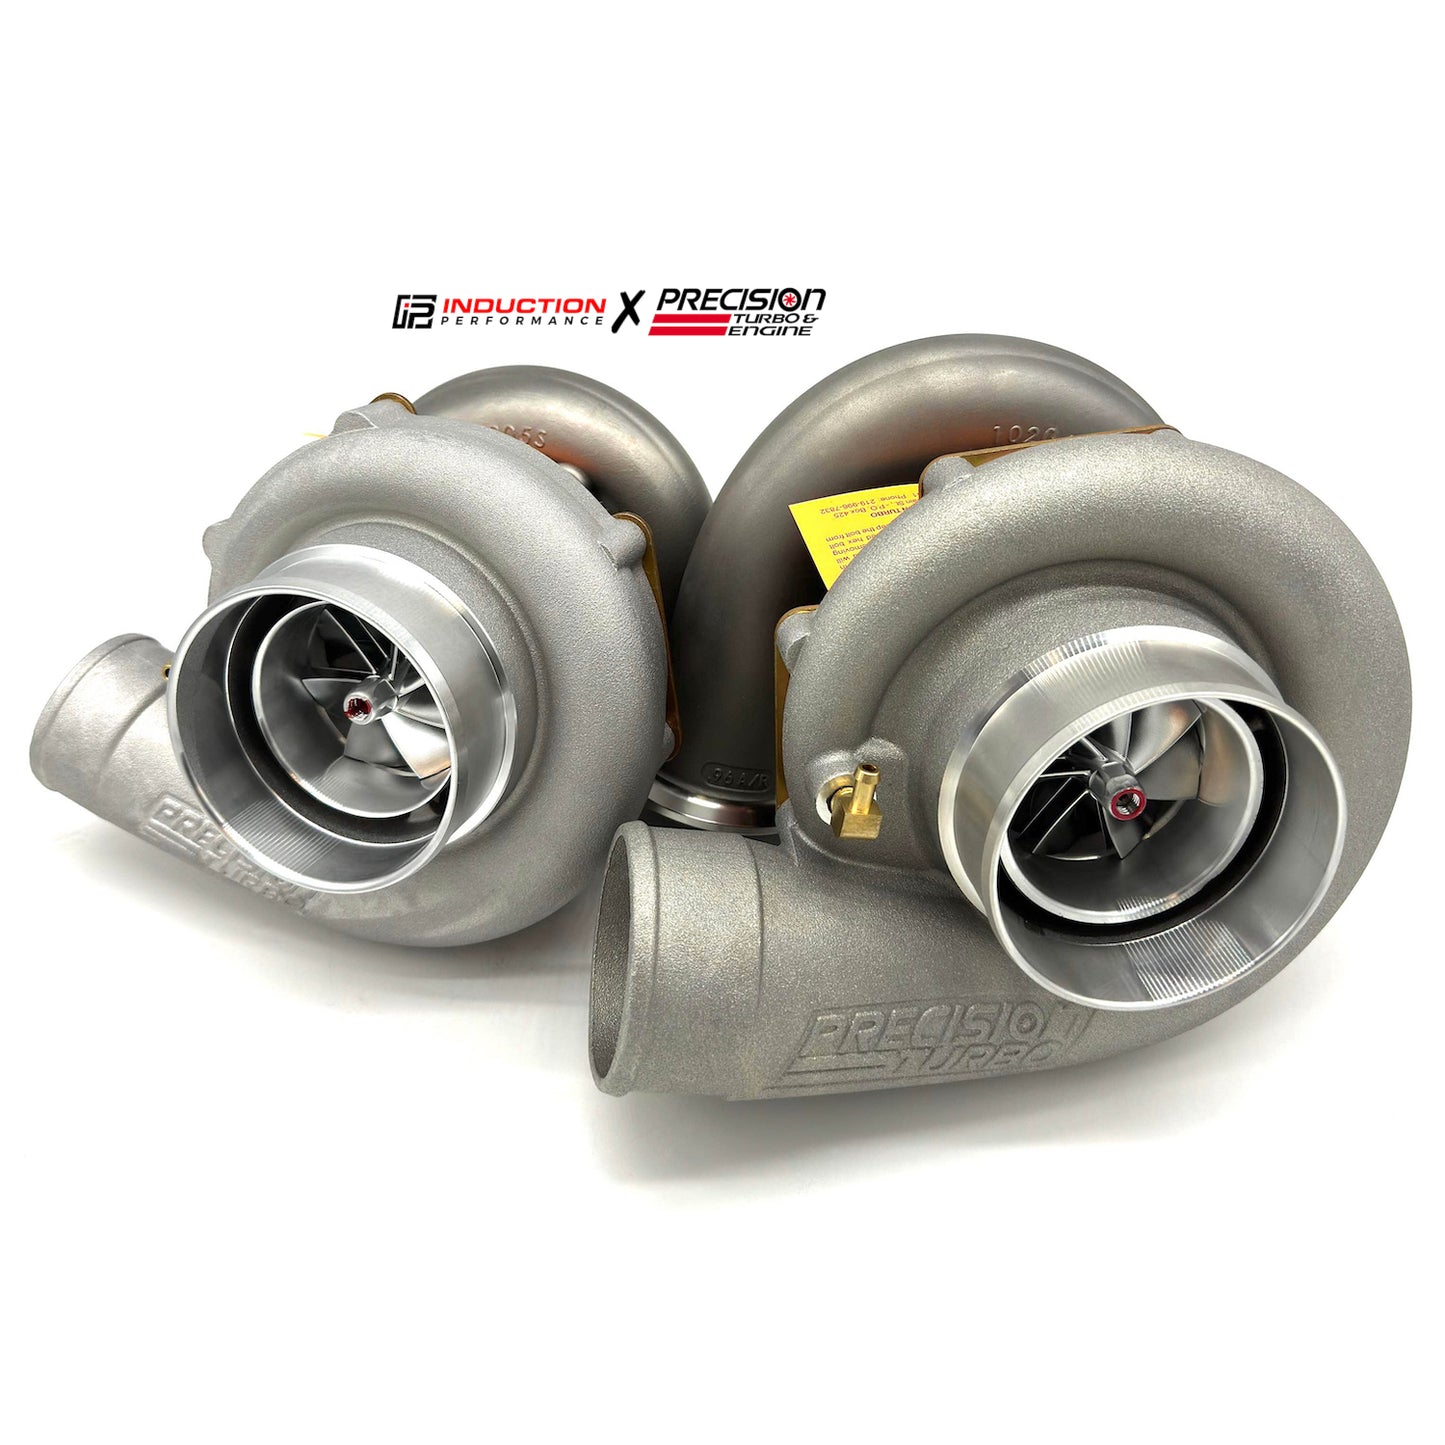 PRÓXIMAMENTE - Turbo y motor de precisión - Próxima generación 6870 CEA - Turbocompresor de carrera 